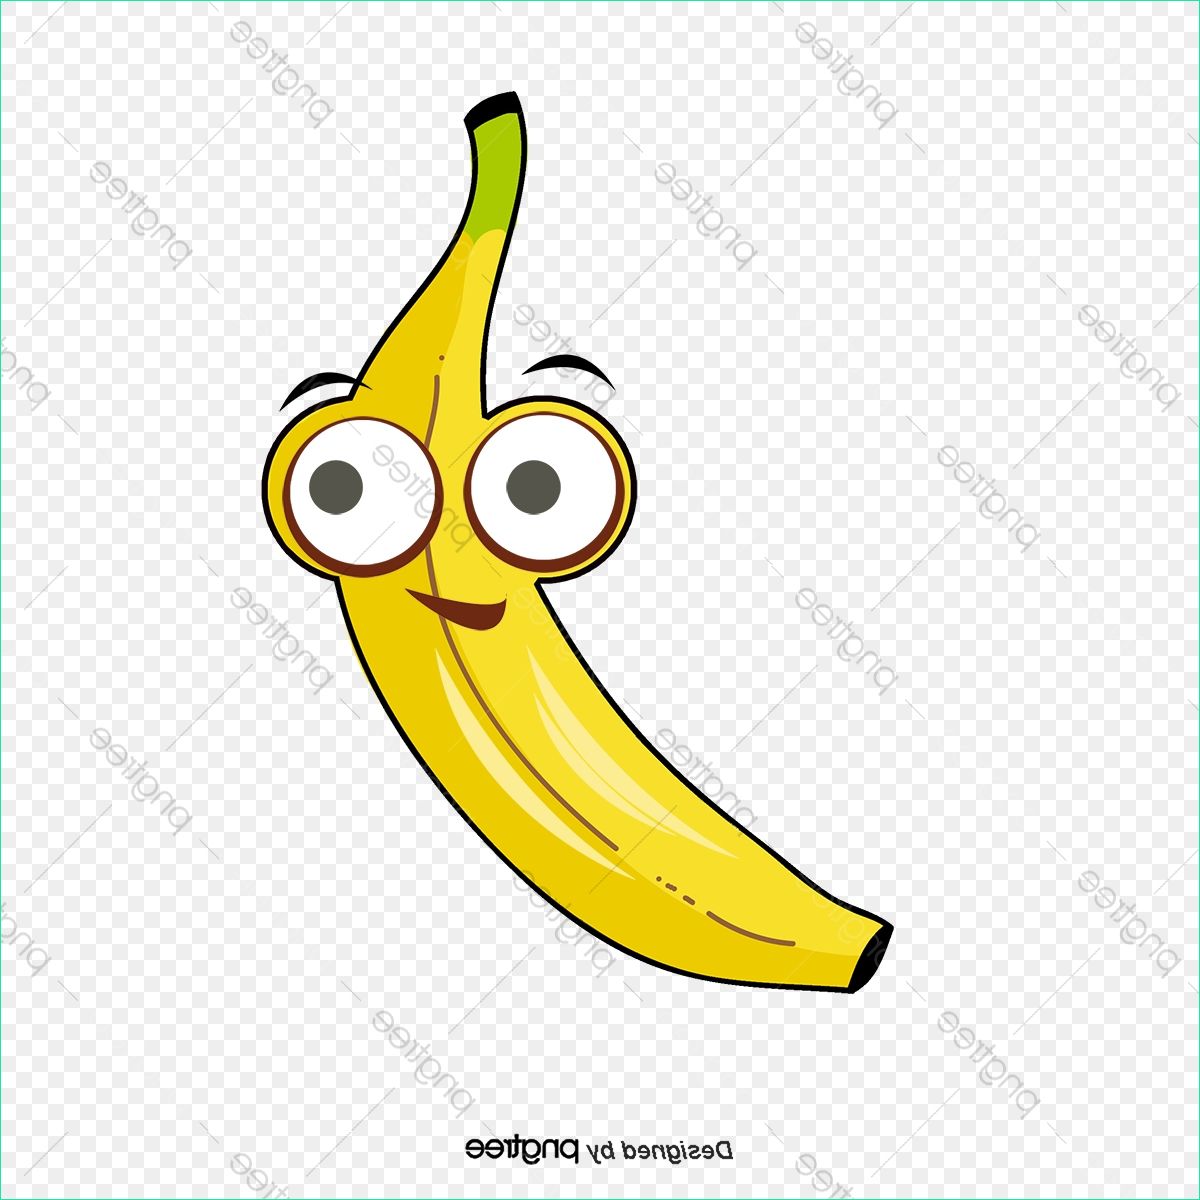 le dessin de la banane dessin jaune bananes png et tout dessiner une banane